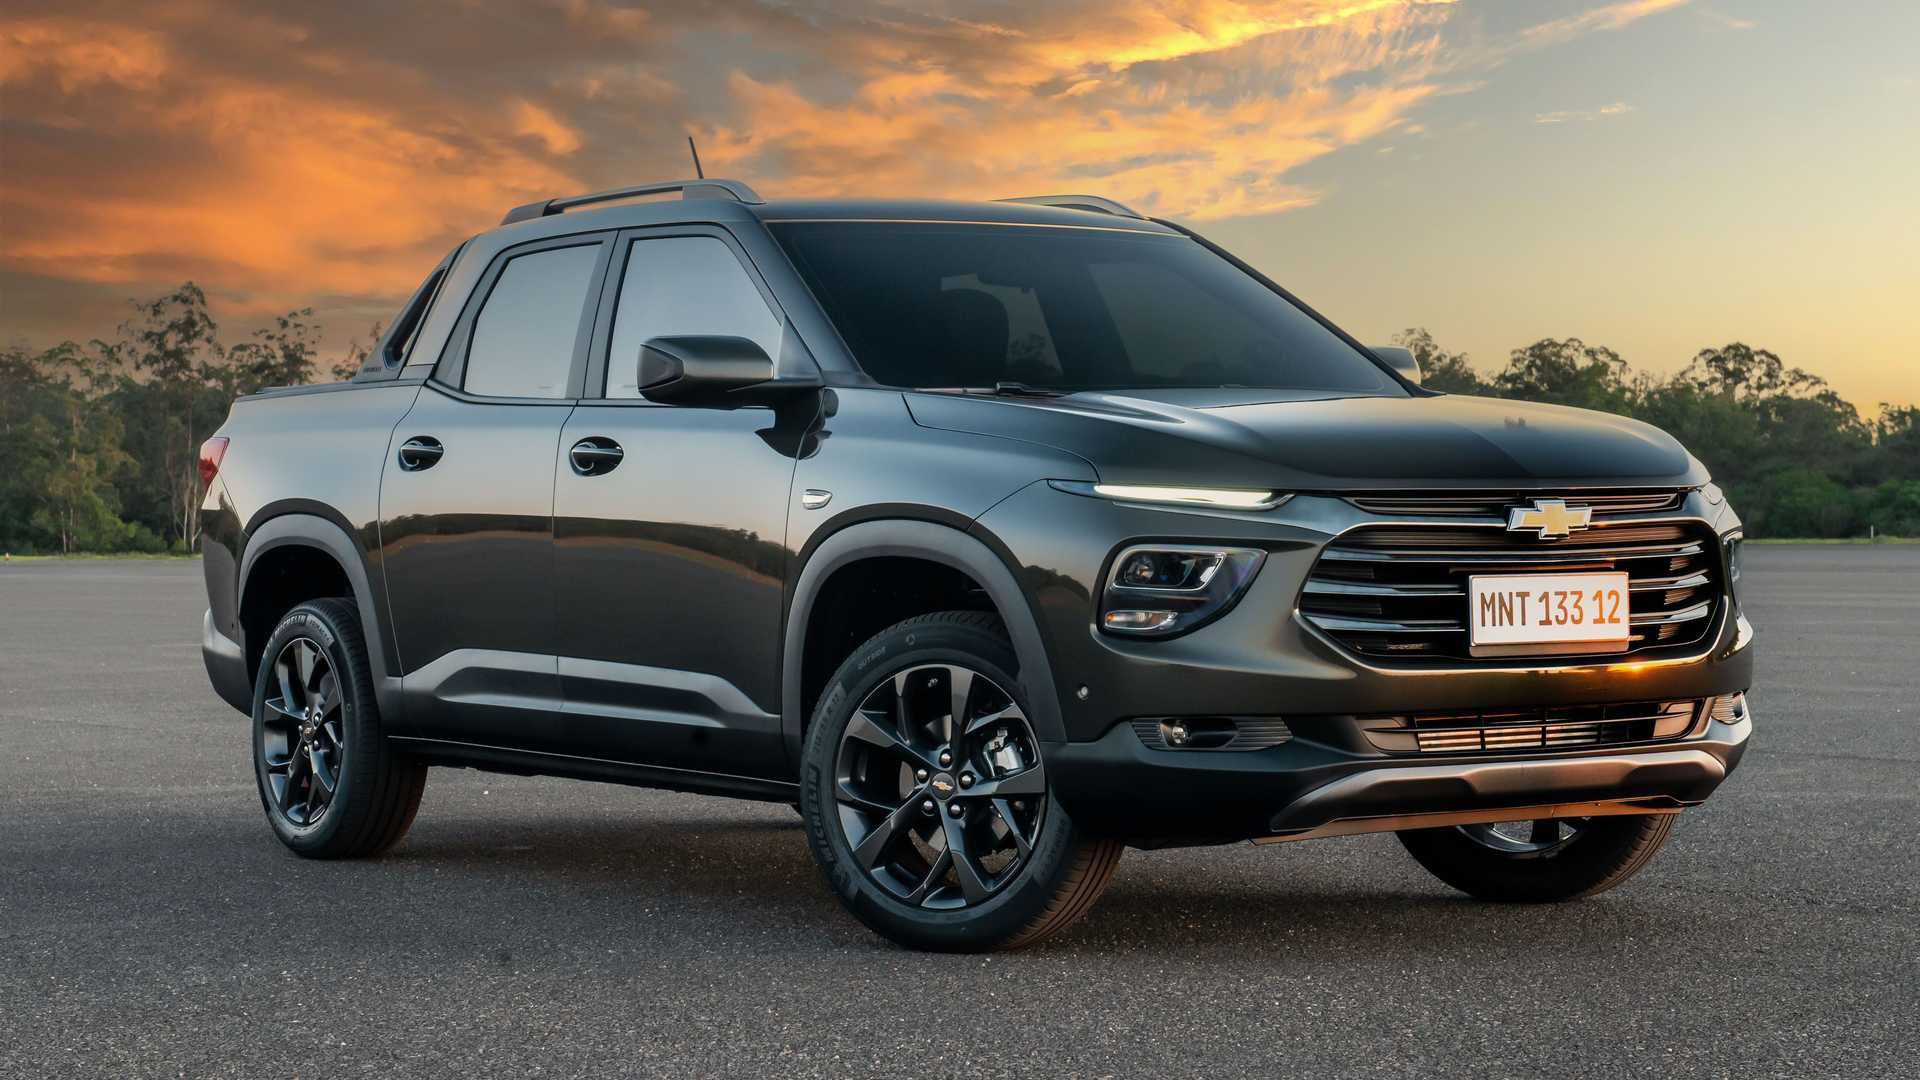 Confirmado: la nueva Chevrolet Montana no tendrá versiones 4x4